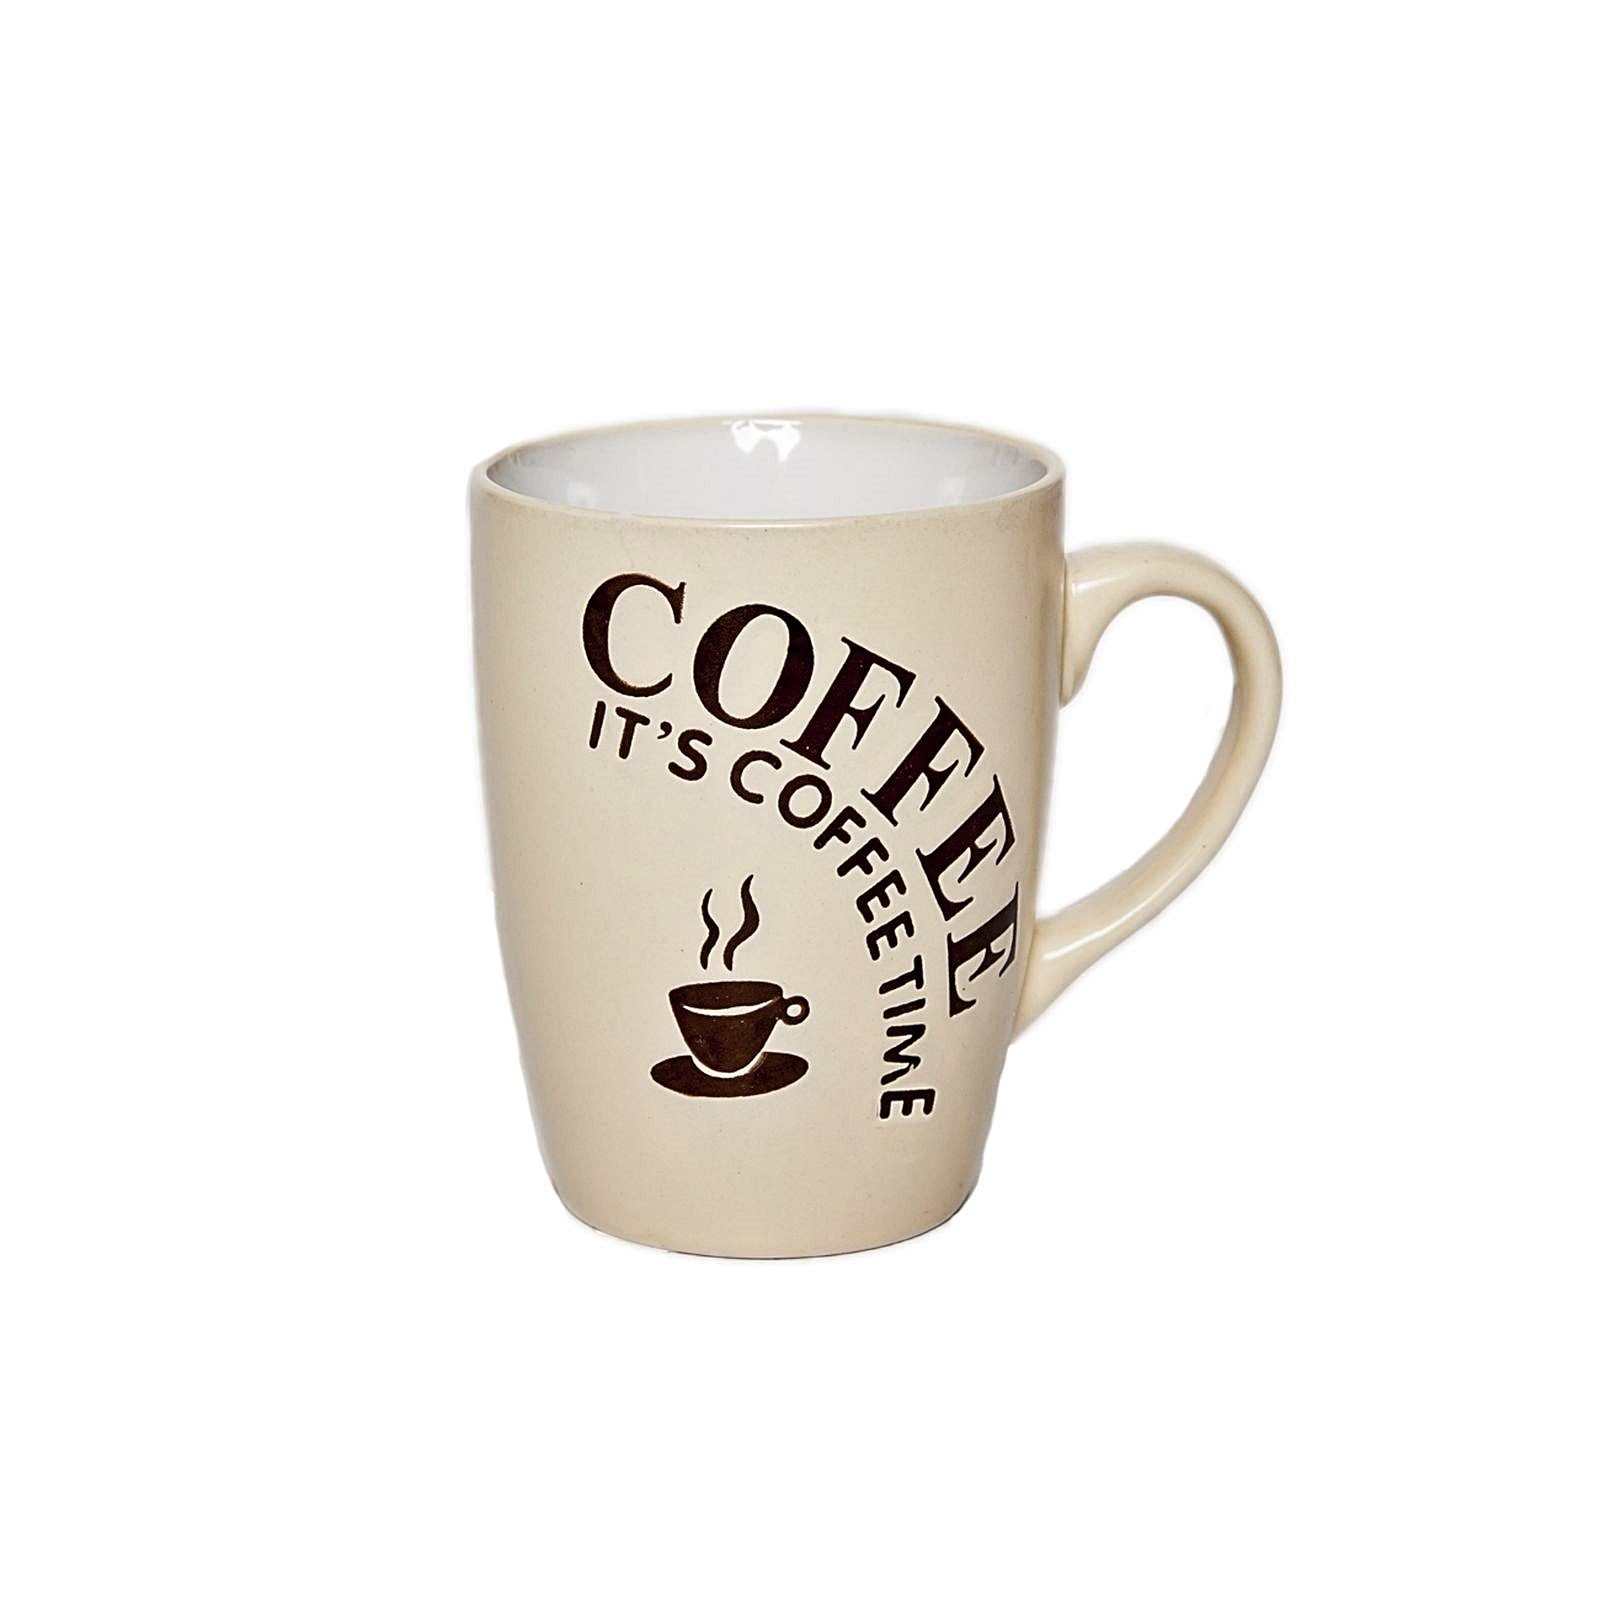 astor24 Tasse Kaffeebecher Kaffeetassen Kaffeepott, 6-teilig Kaffeetasse Keramik